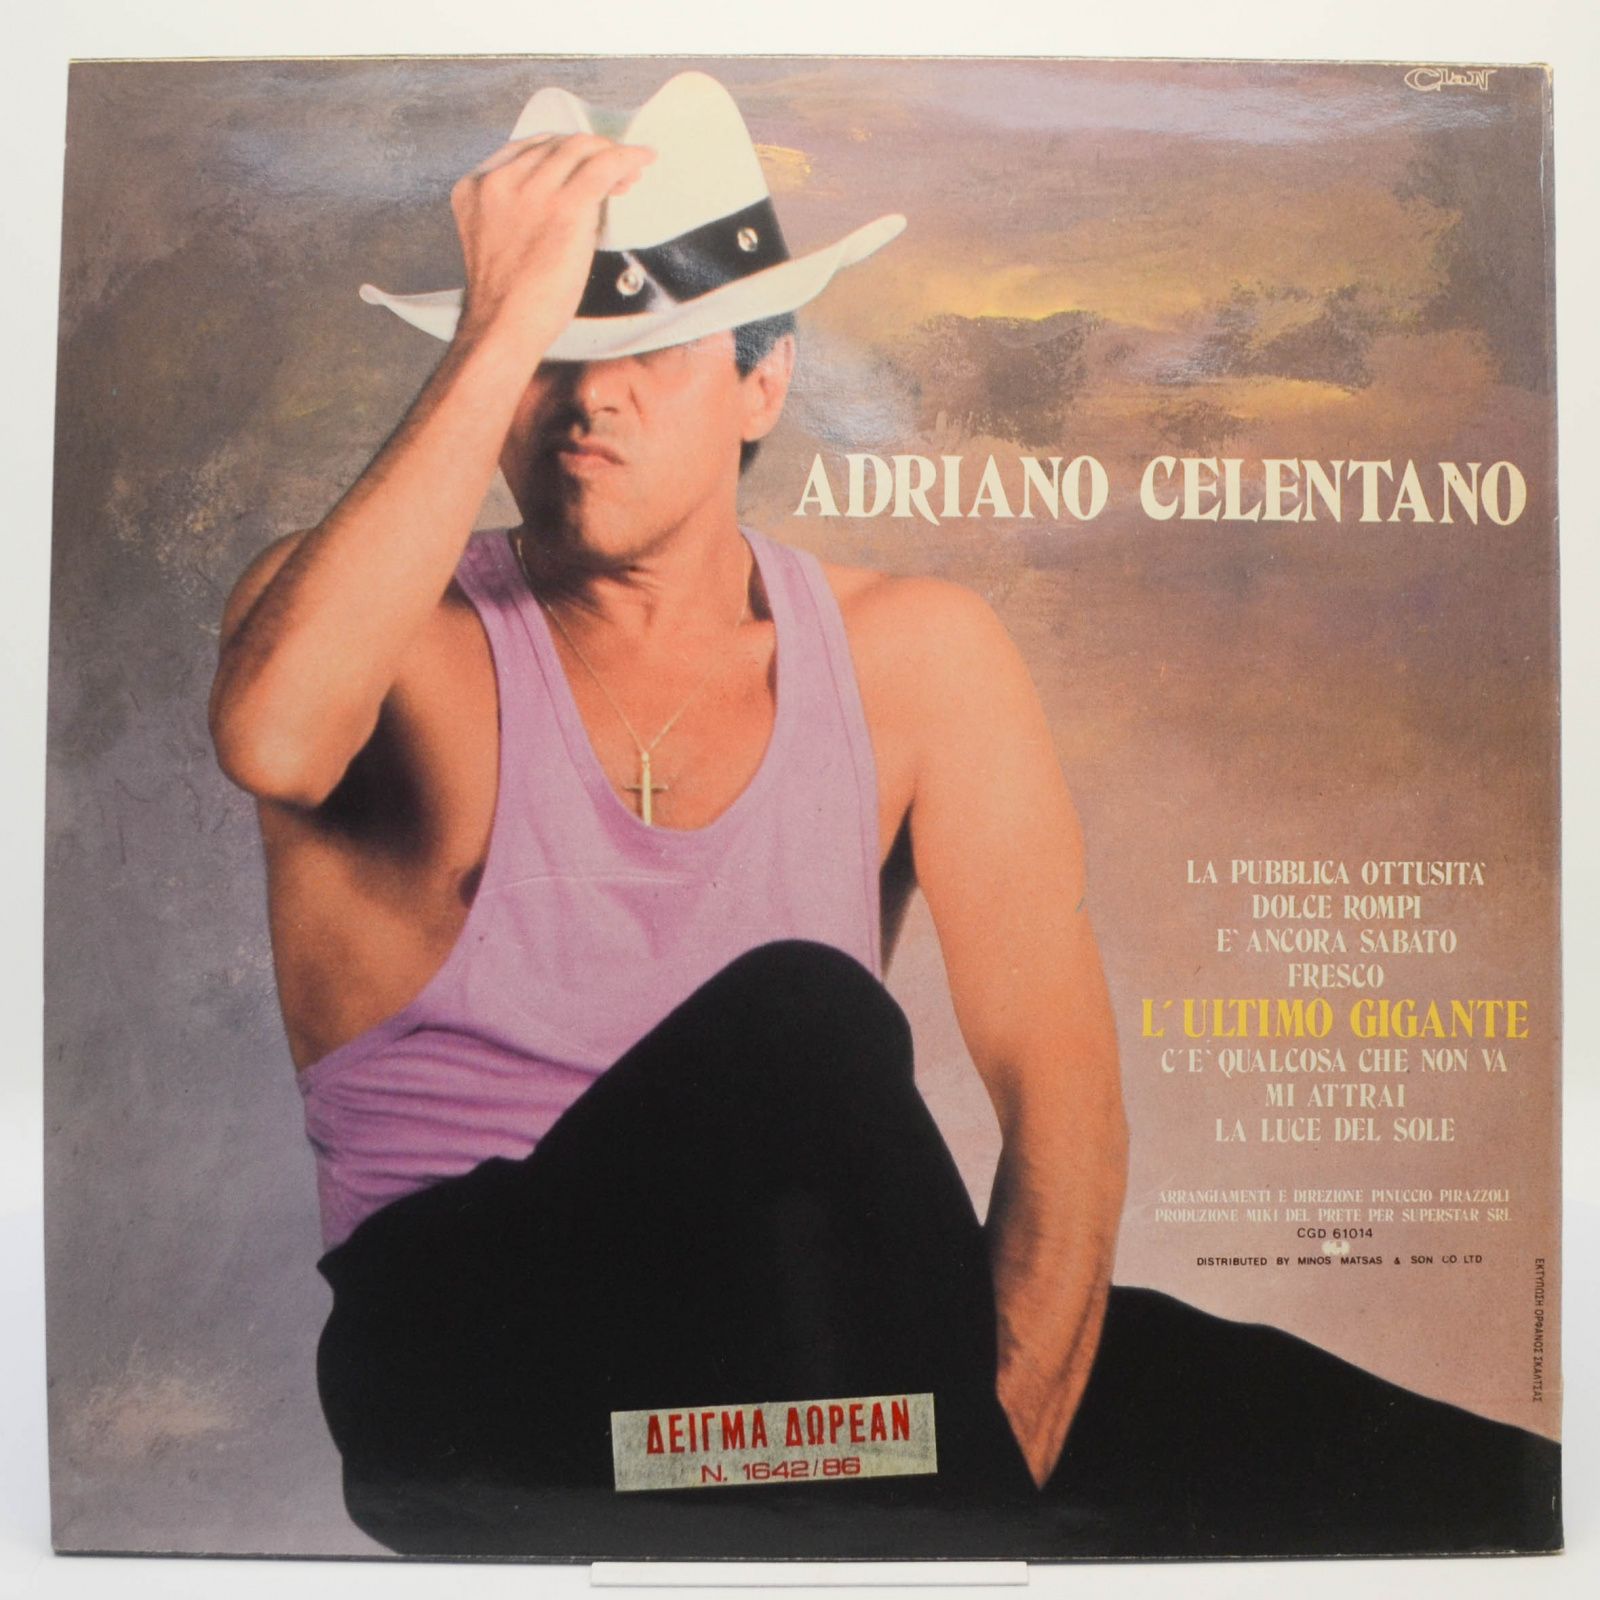 Adriano Celentano — La Pubblica Ottusità, 1987